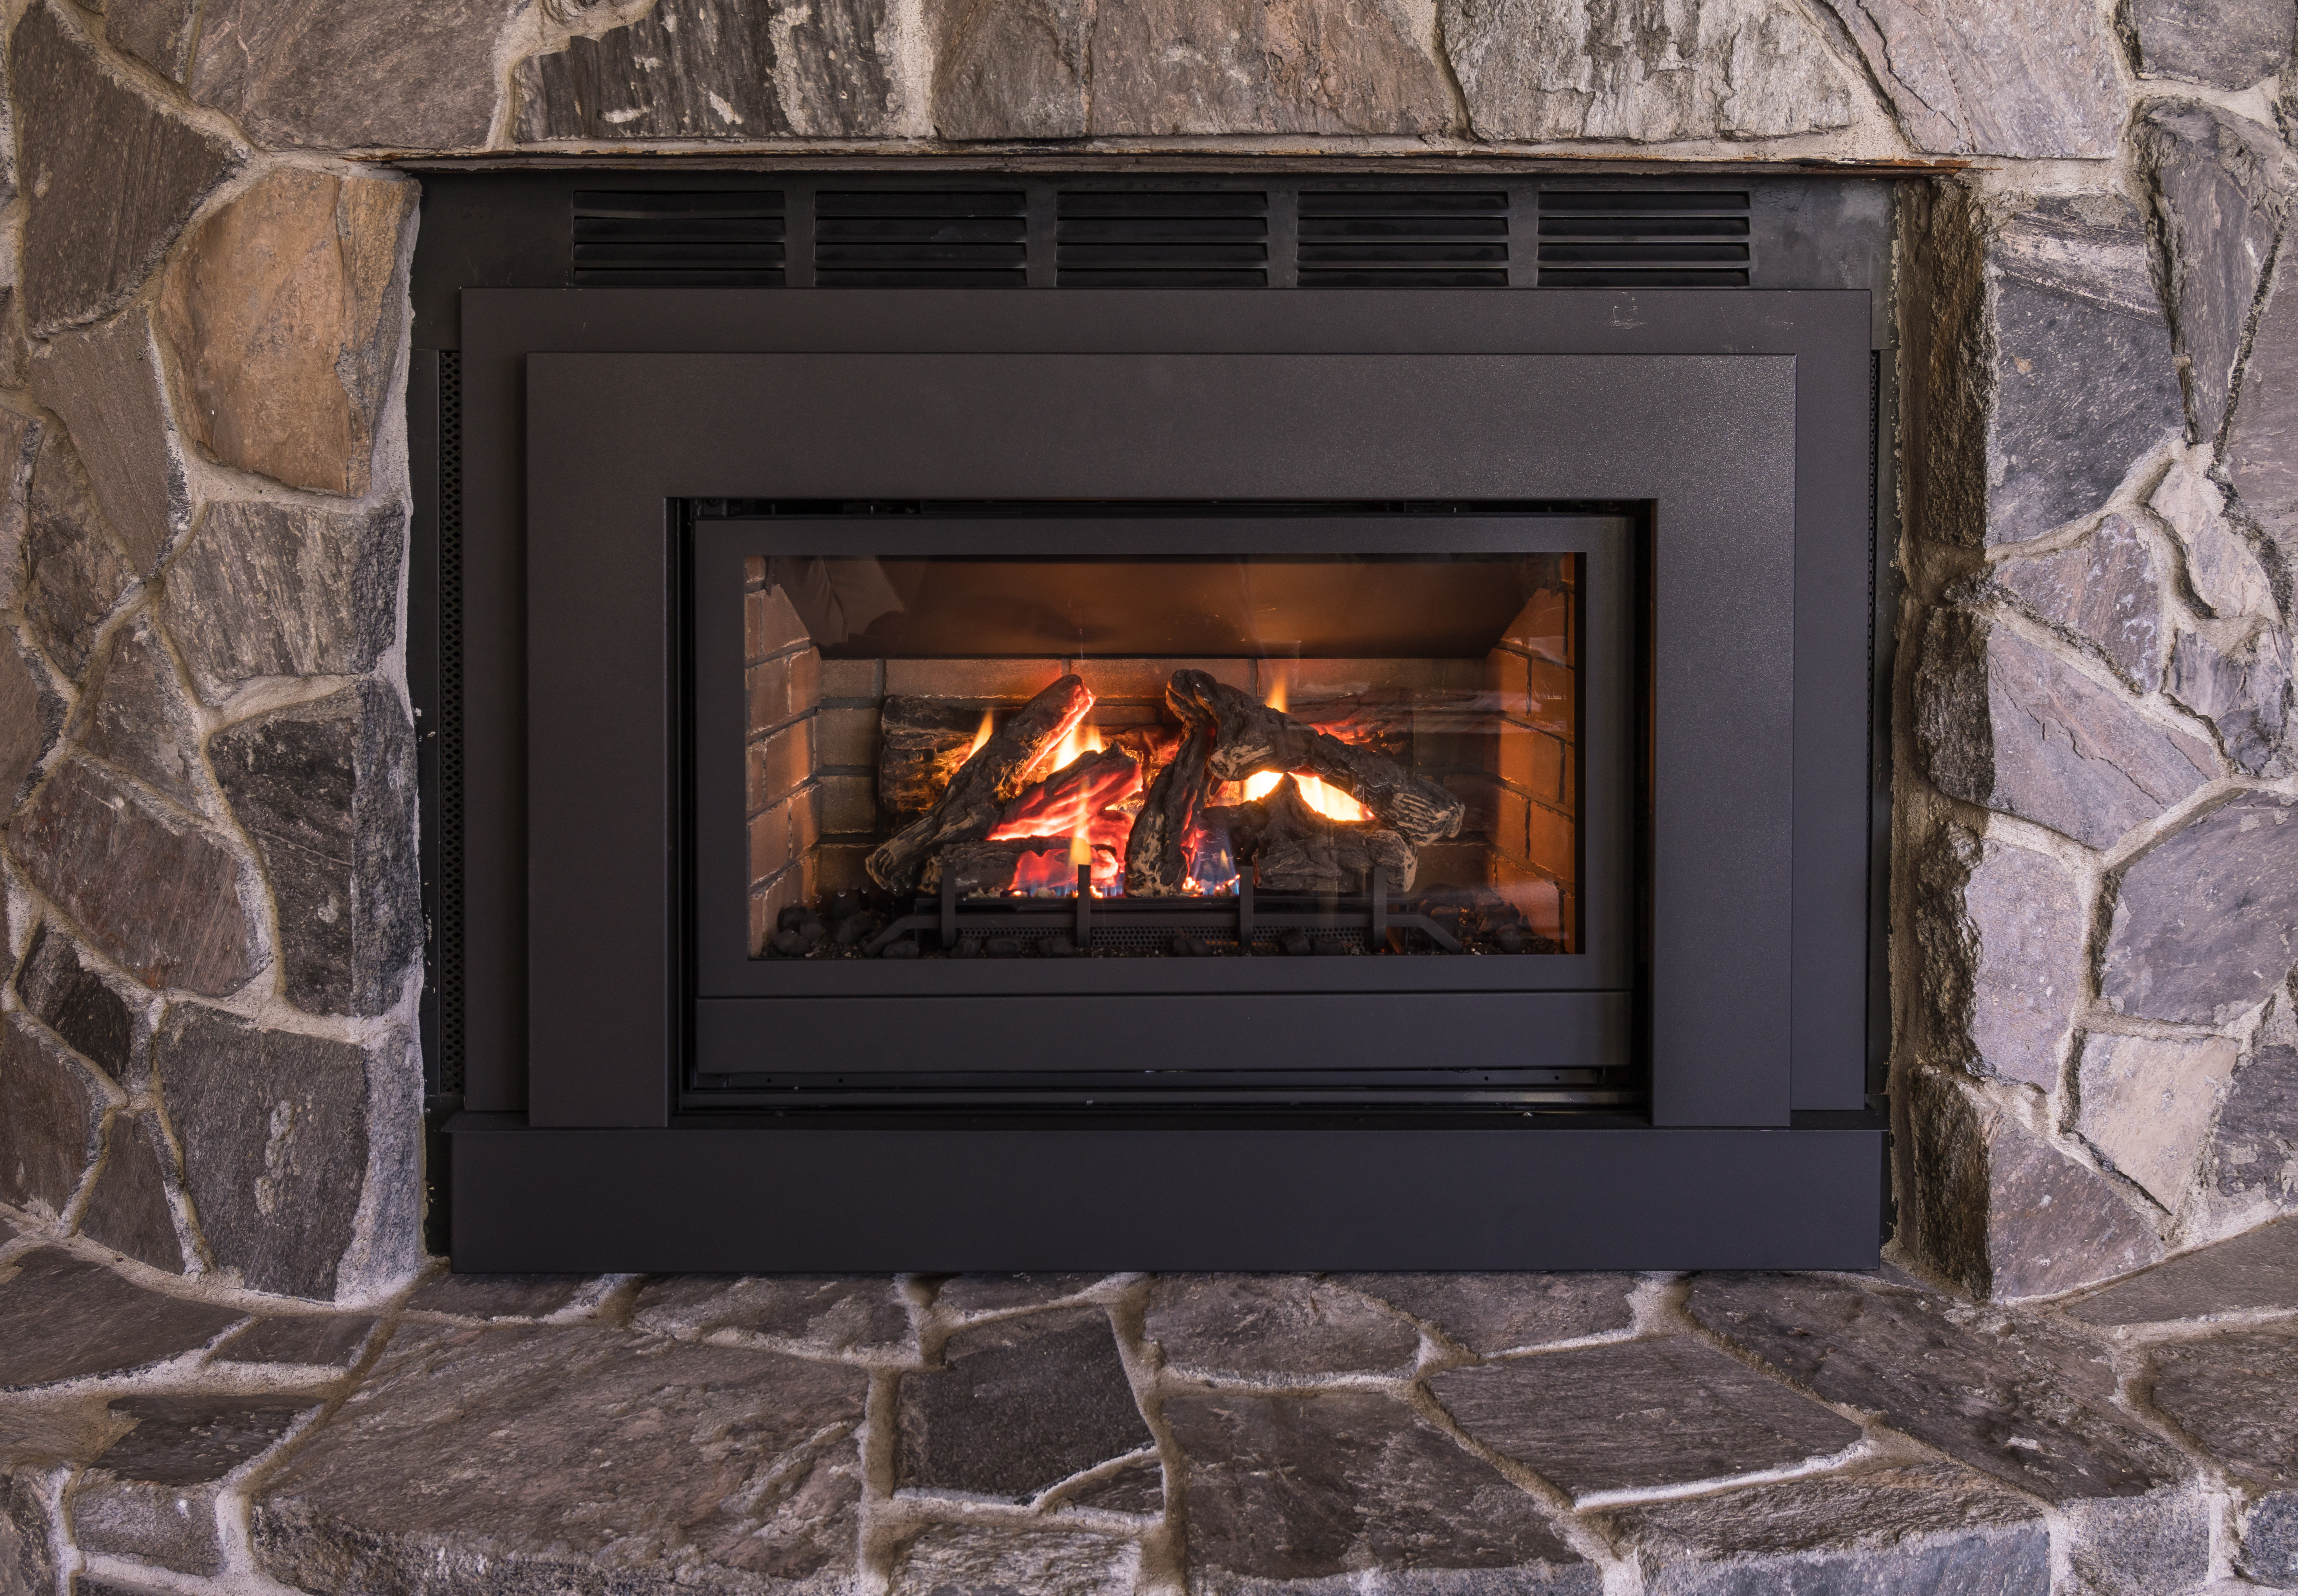 A well-lit gas fireplace | Source: Shutterstock